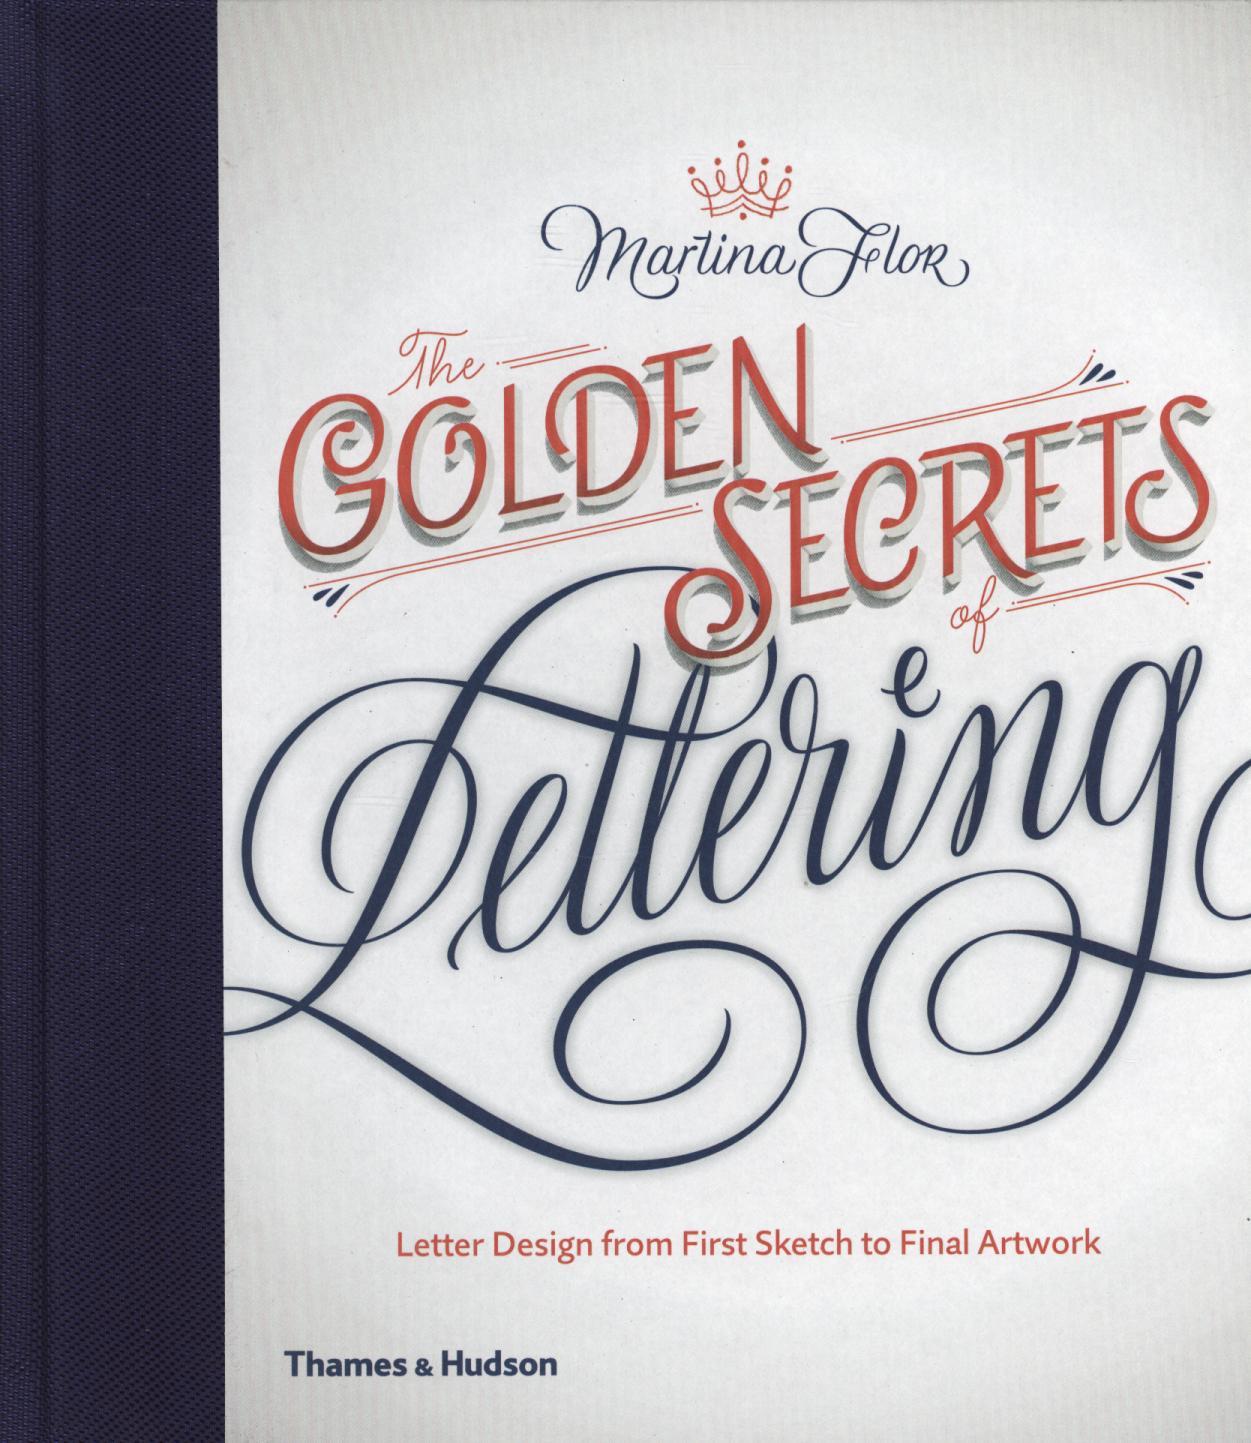 Golden Secrets of Lettering - Martina Flor